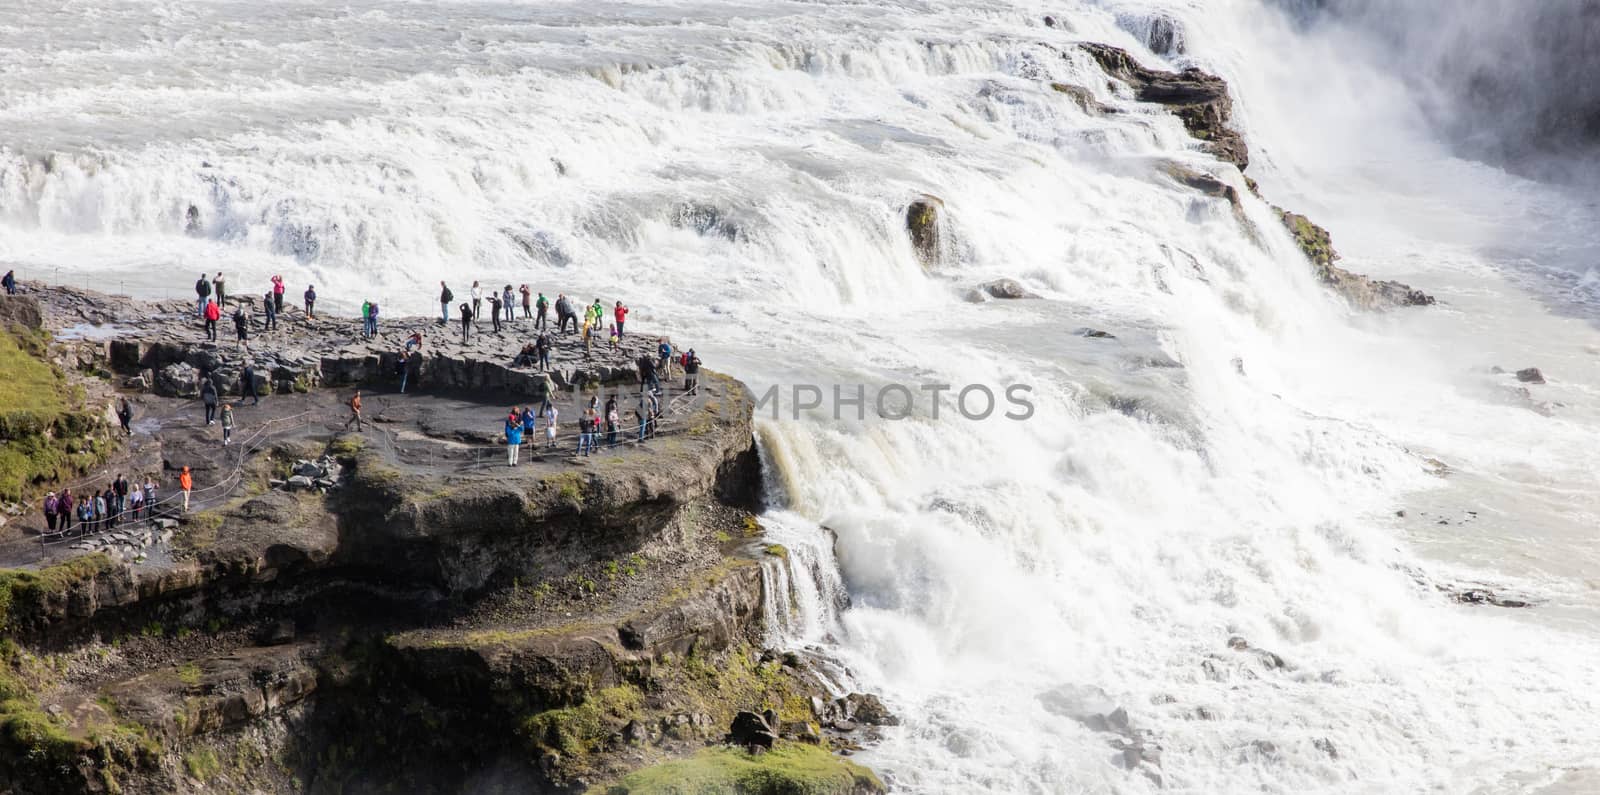 ICELAND - July 26, 2016: Icelandic Waterfall Gullfoss by michaklootwijk